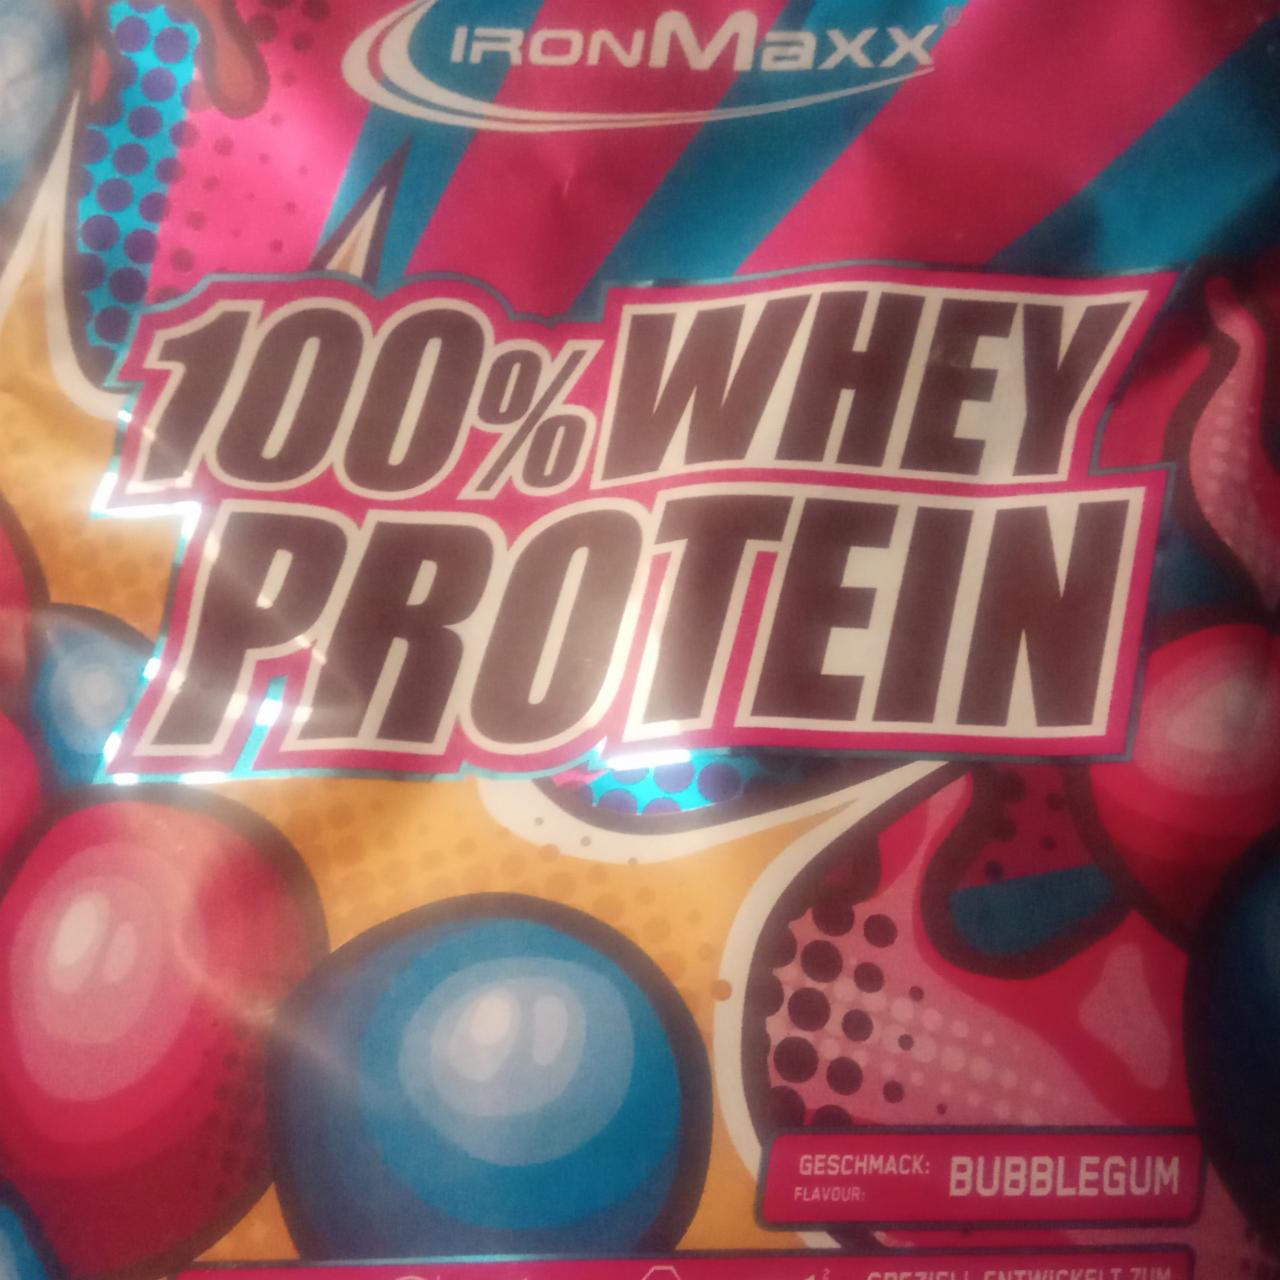 Zdjęcia - 100% Whey Protein Bubblegum Iron Maxx